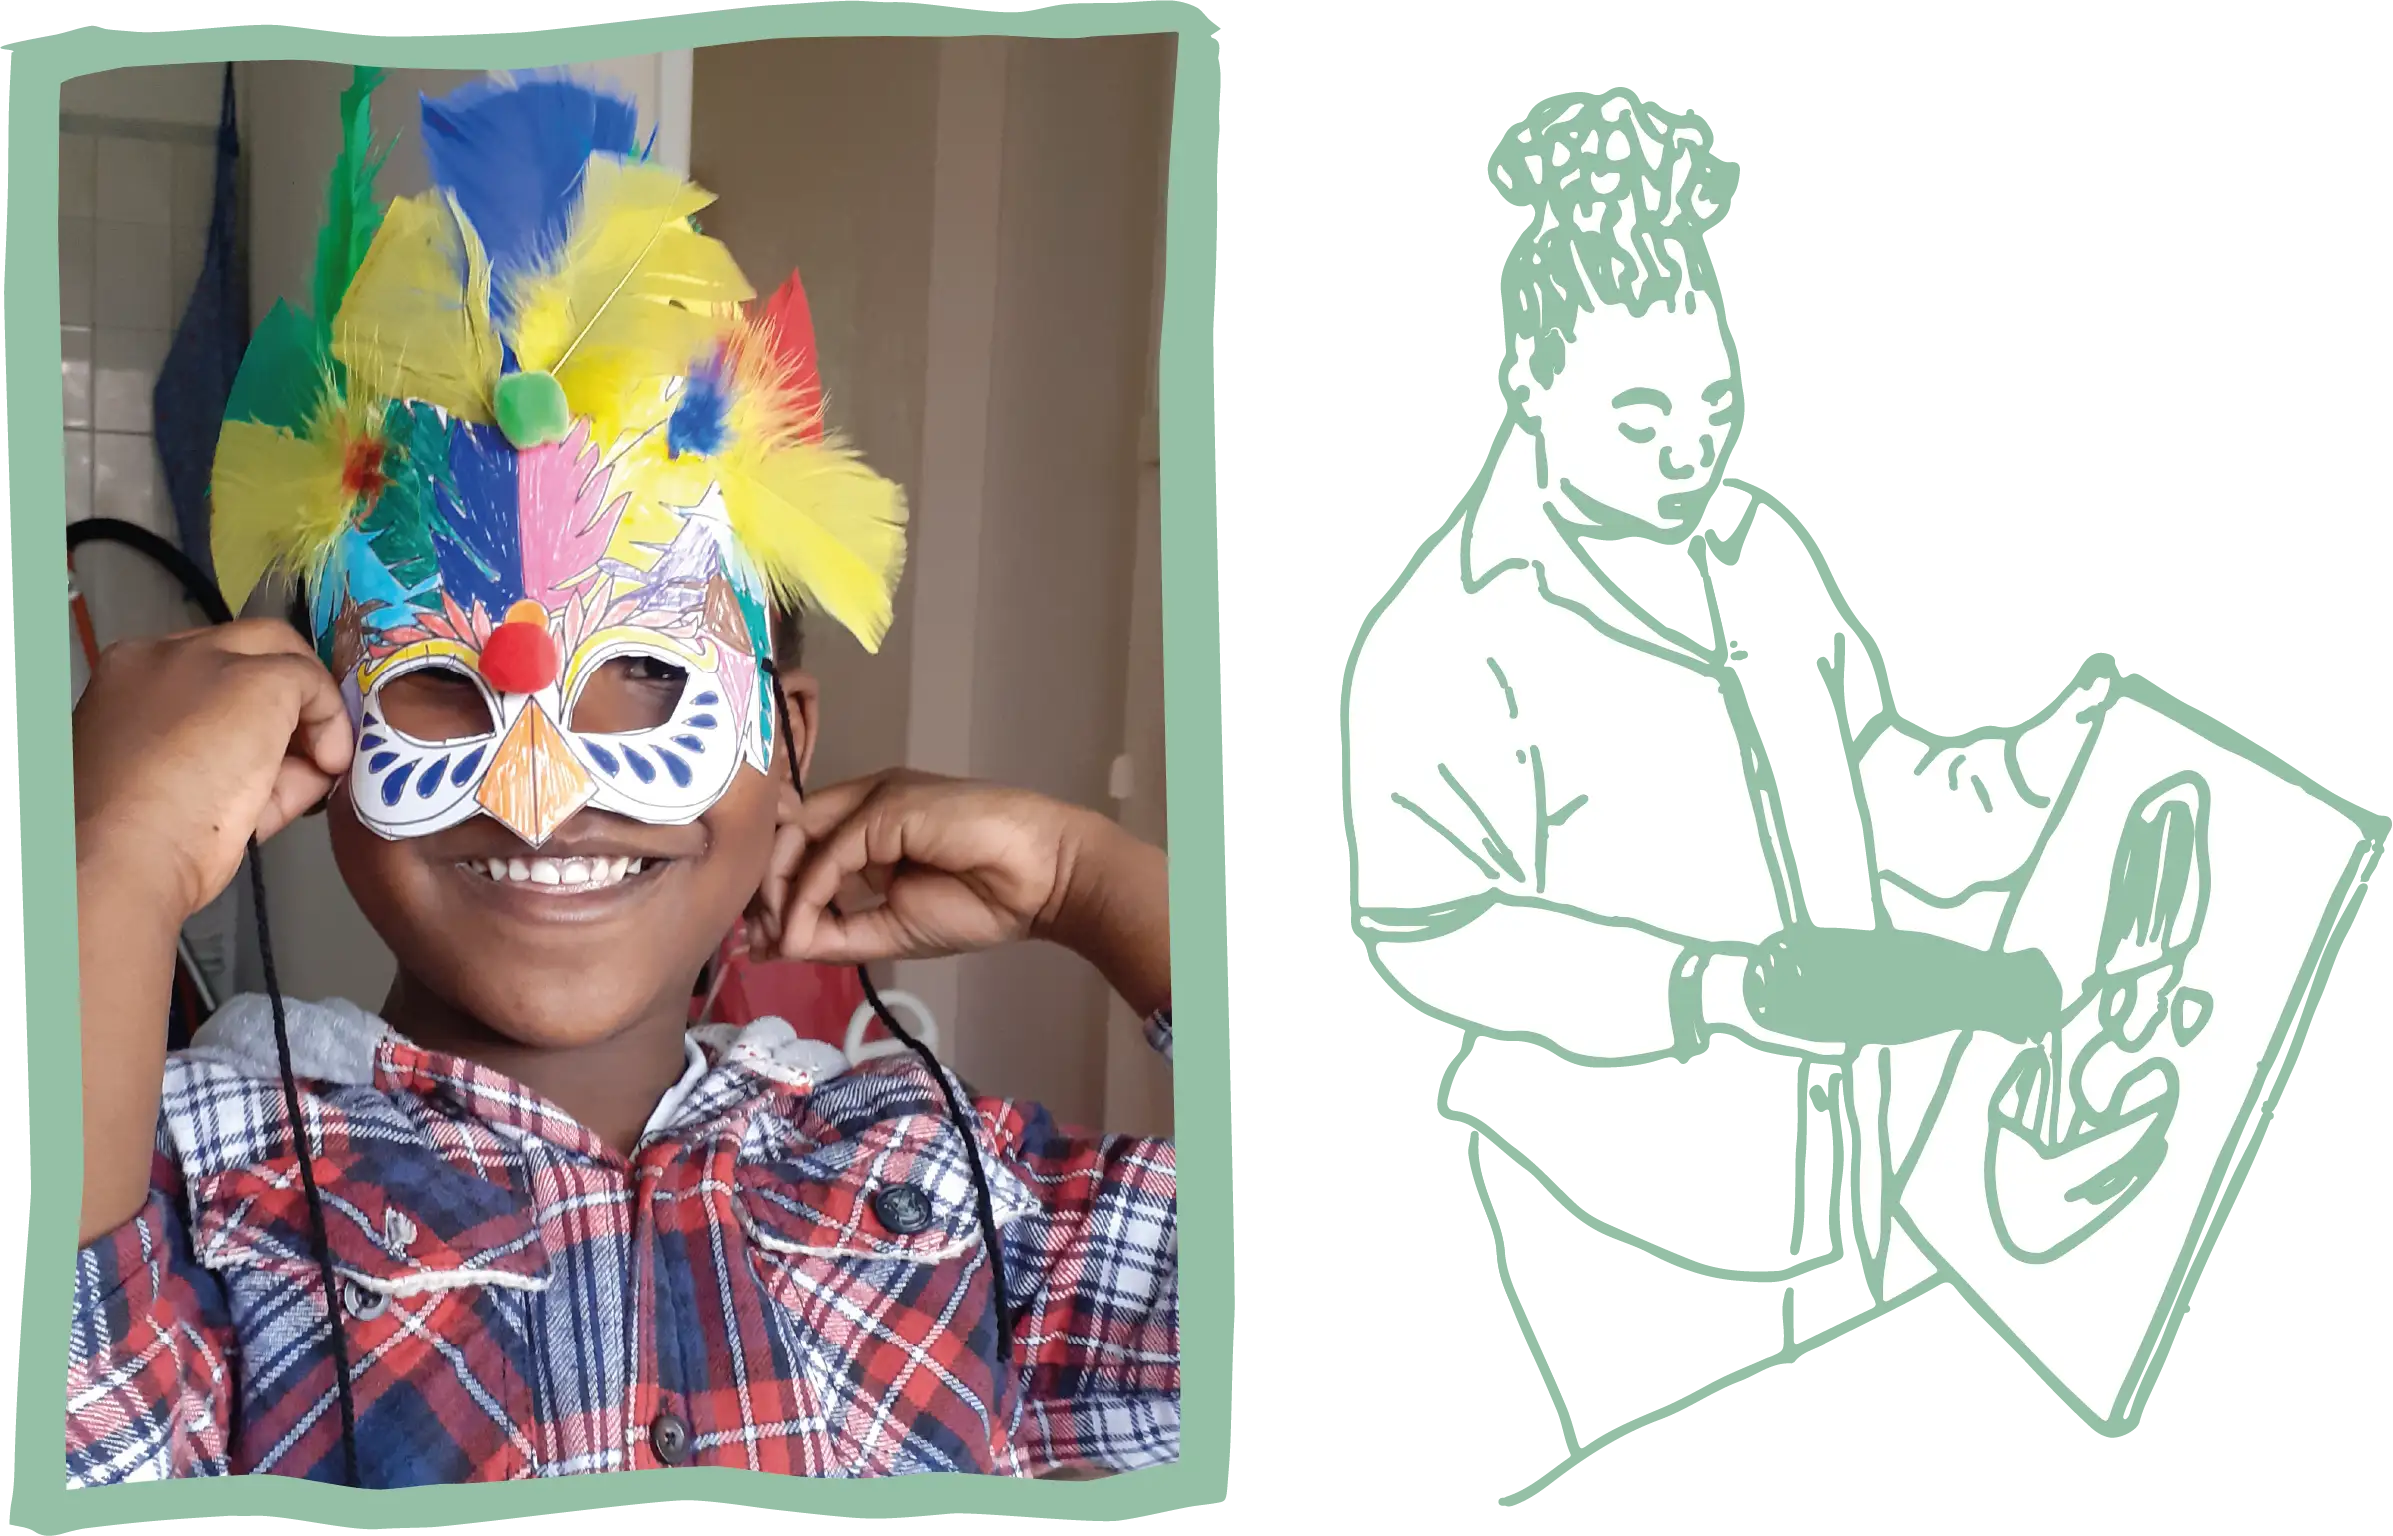 Sur la gauche du visuel une photo d'un enfant qui sourrit avec un masque à plumes. Sur la droite un dessin au trait vert d'eau d'une personne en train de sécher une toile de peinture avec un sèche cheveux.